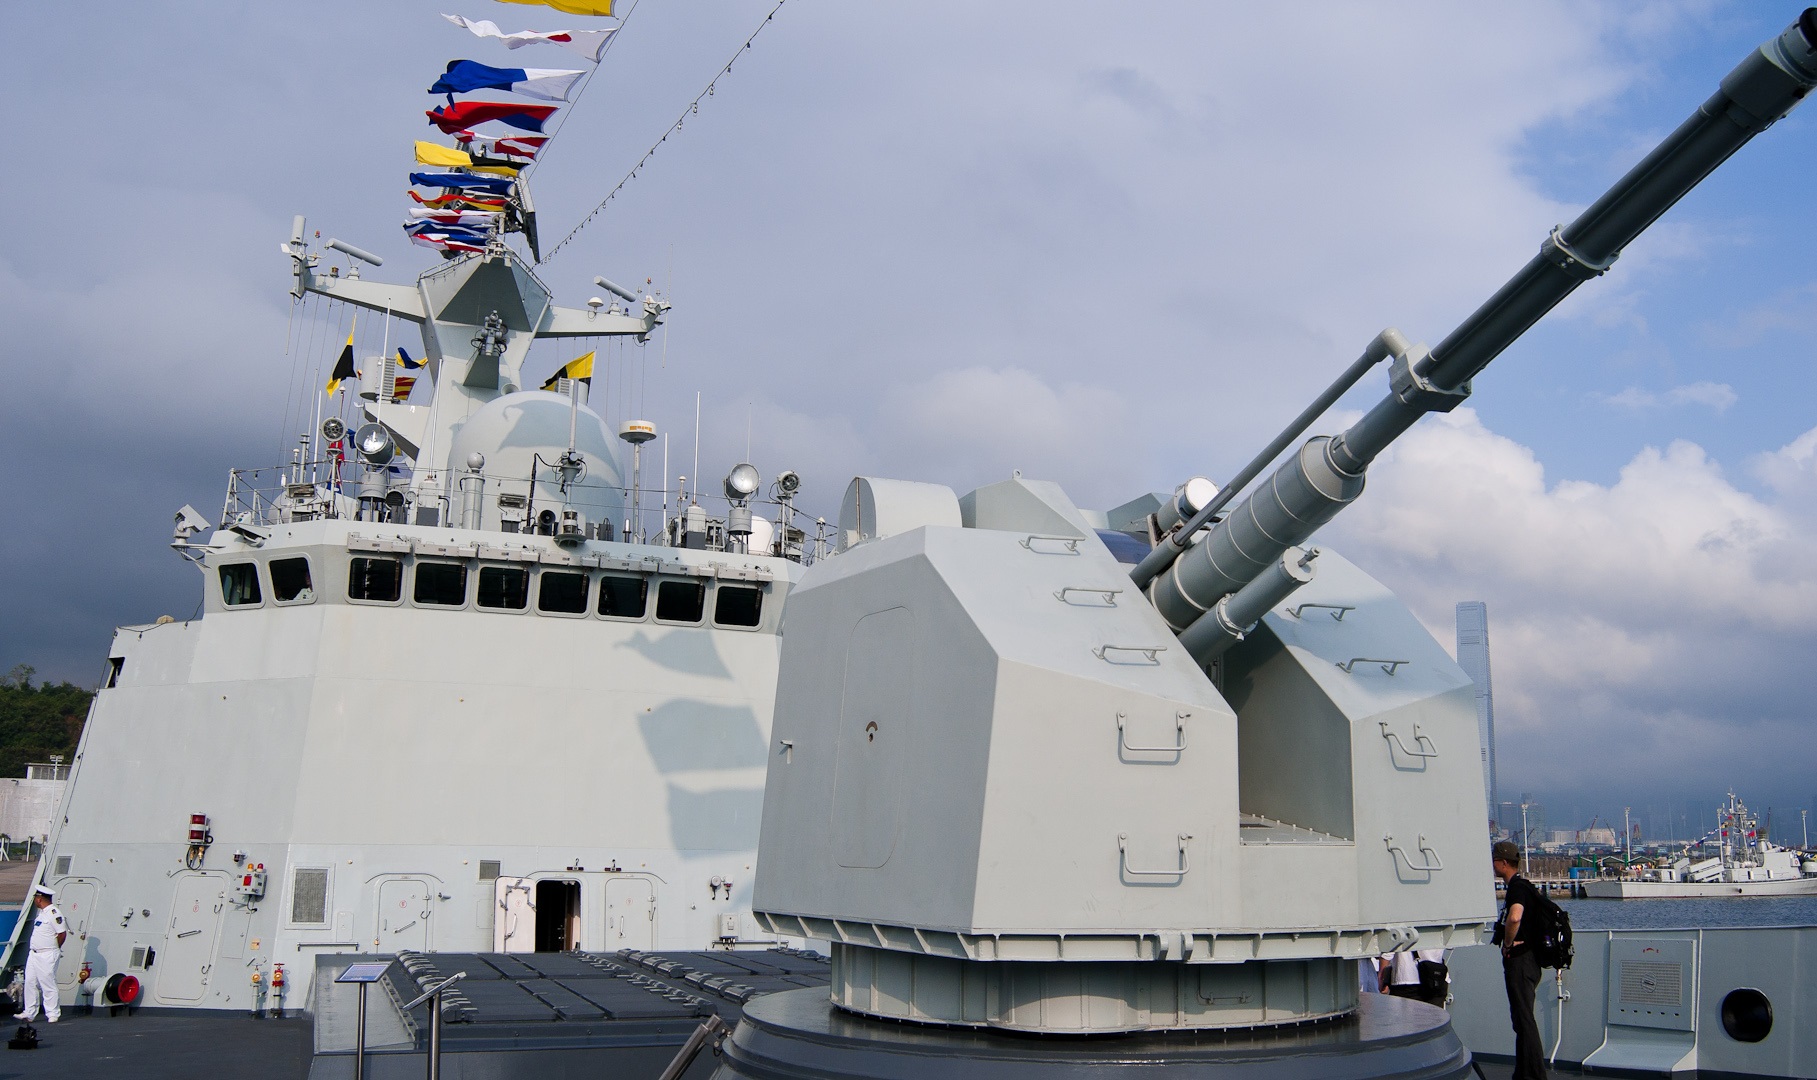 国产超轻型76毫米舰炮图片